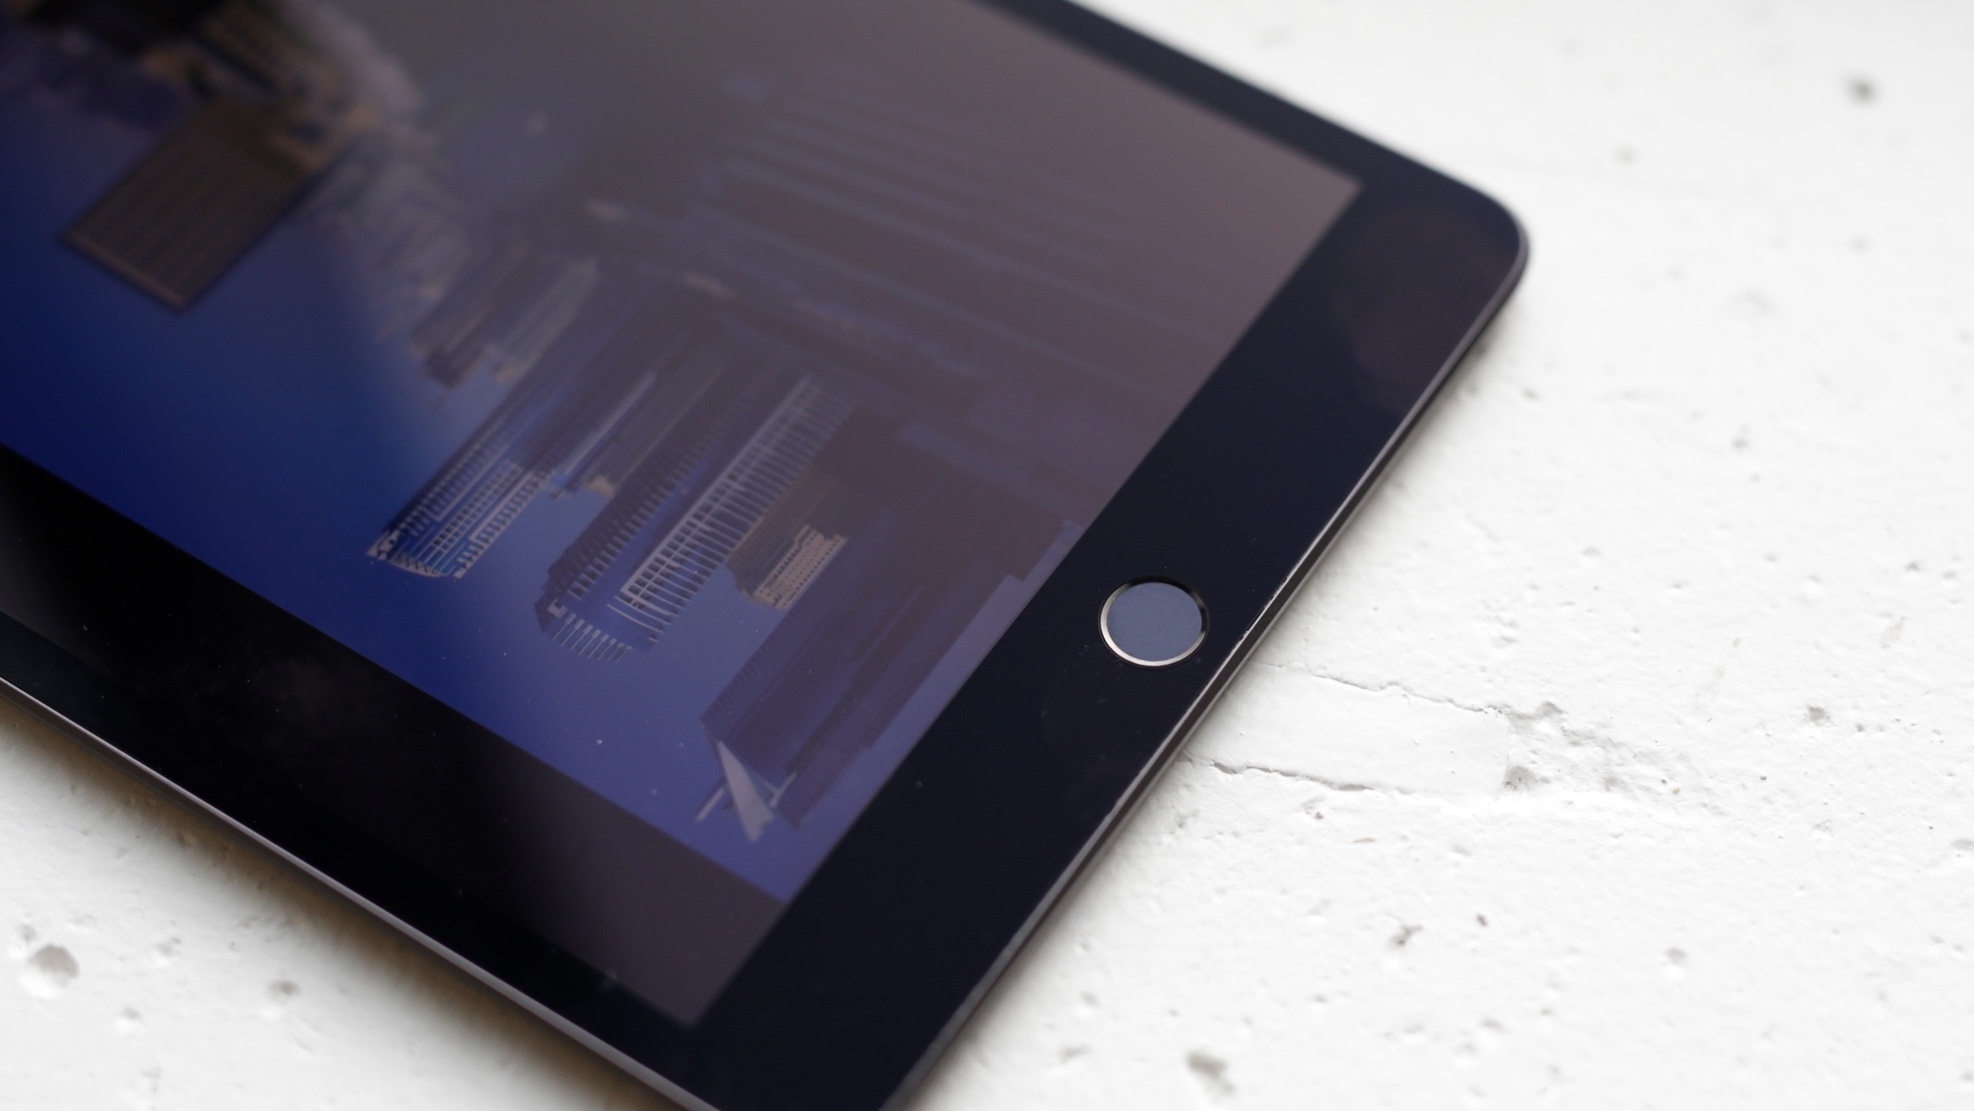 Apple готовит радикальный редизайн планшета iPad mini